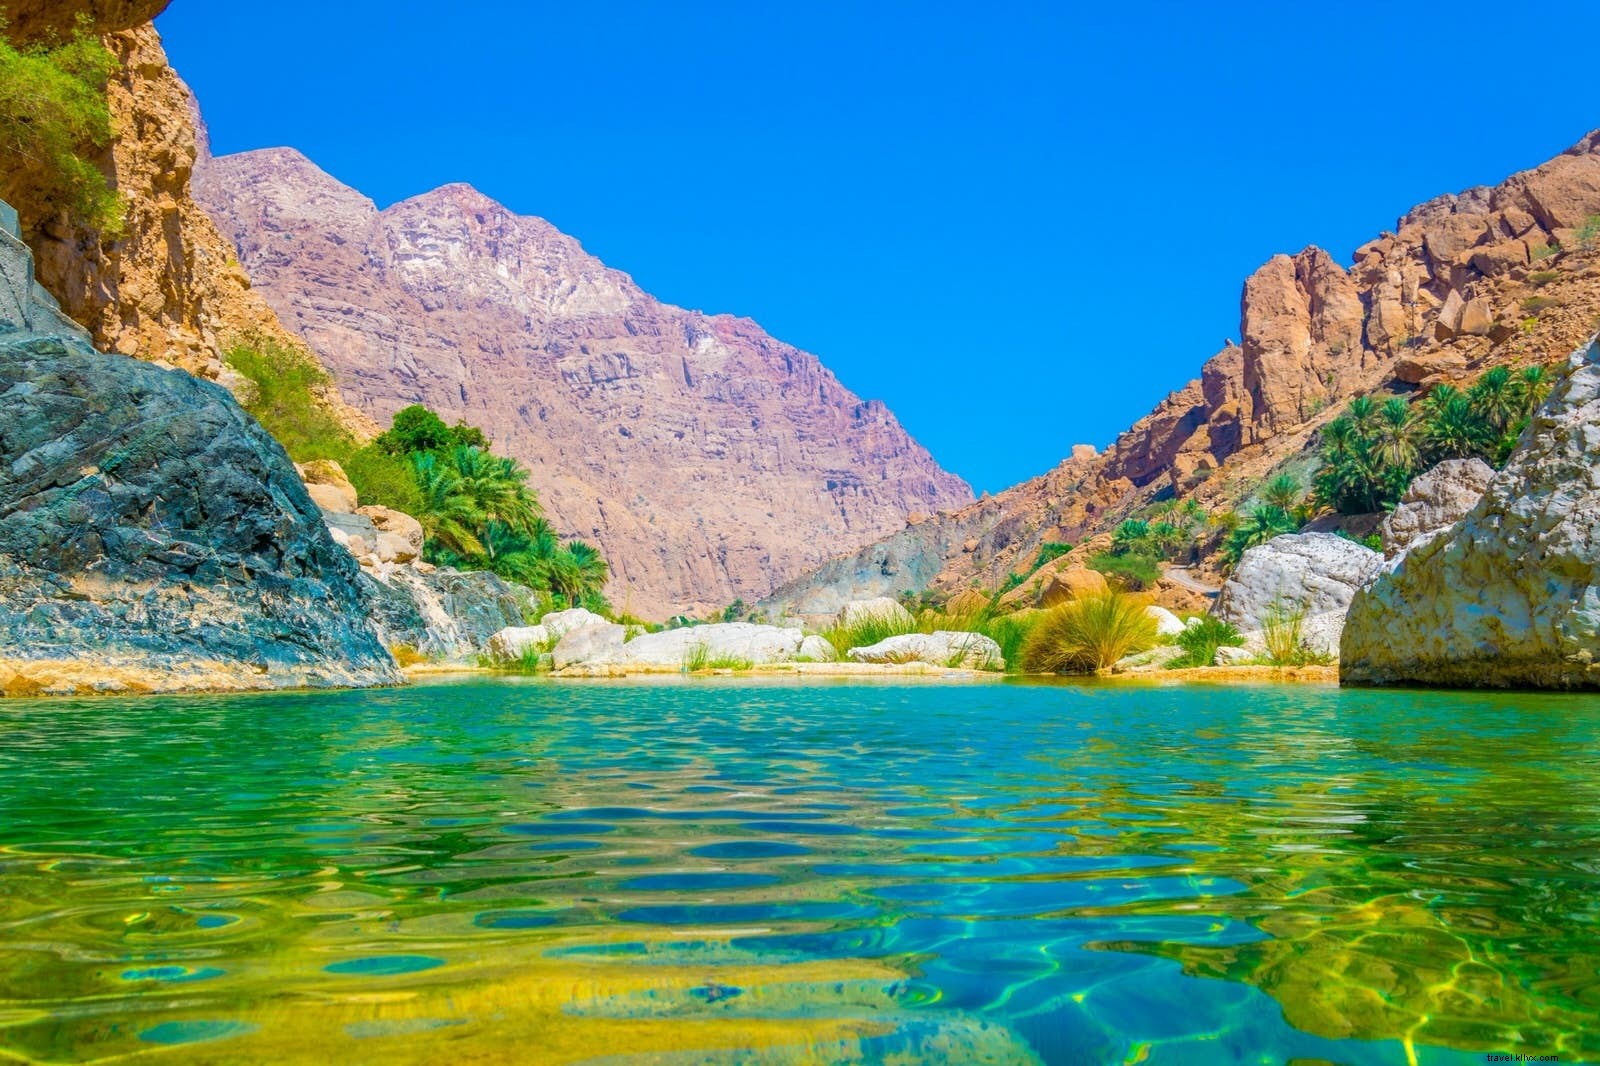 Wadi meravigliosi:visitare il  deserto verticale  dell Oman 